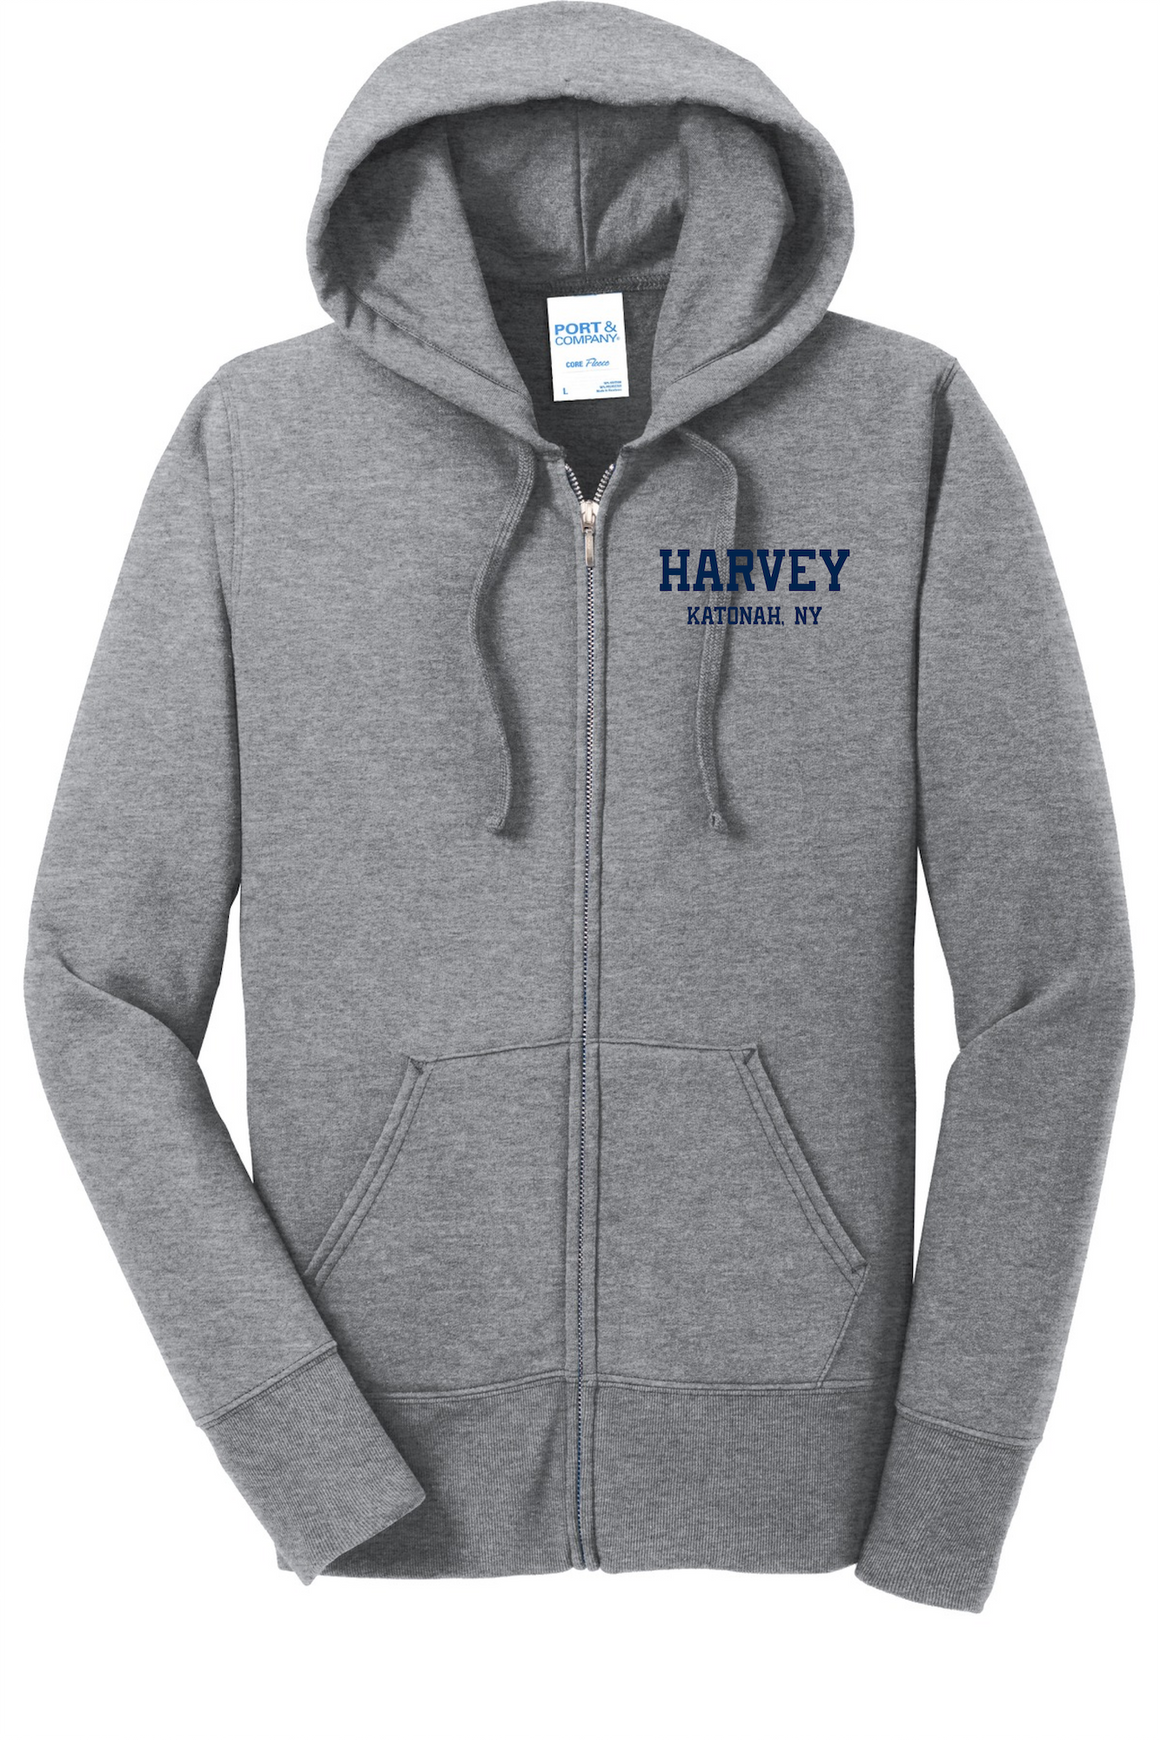 Harvey School Women's Full Zip Sweatshirt 2